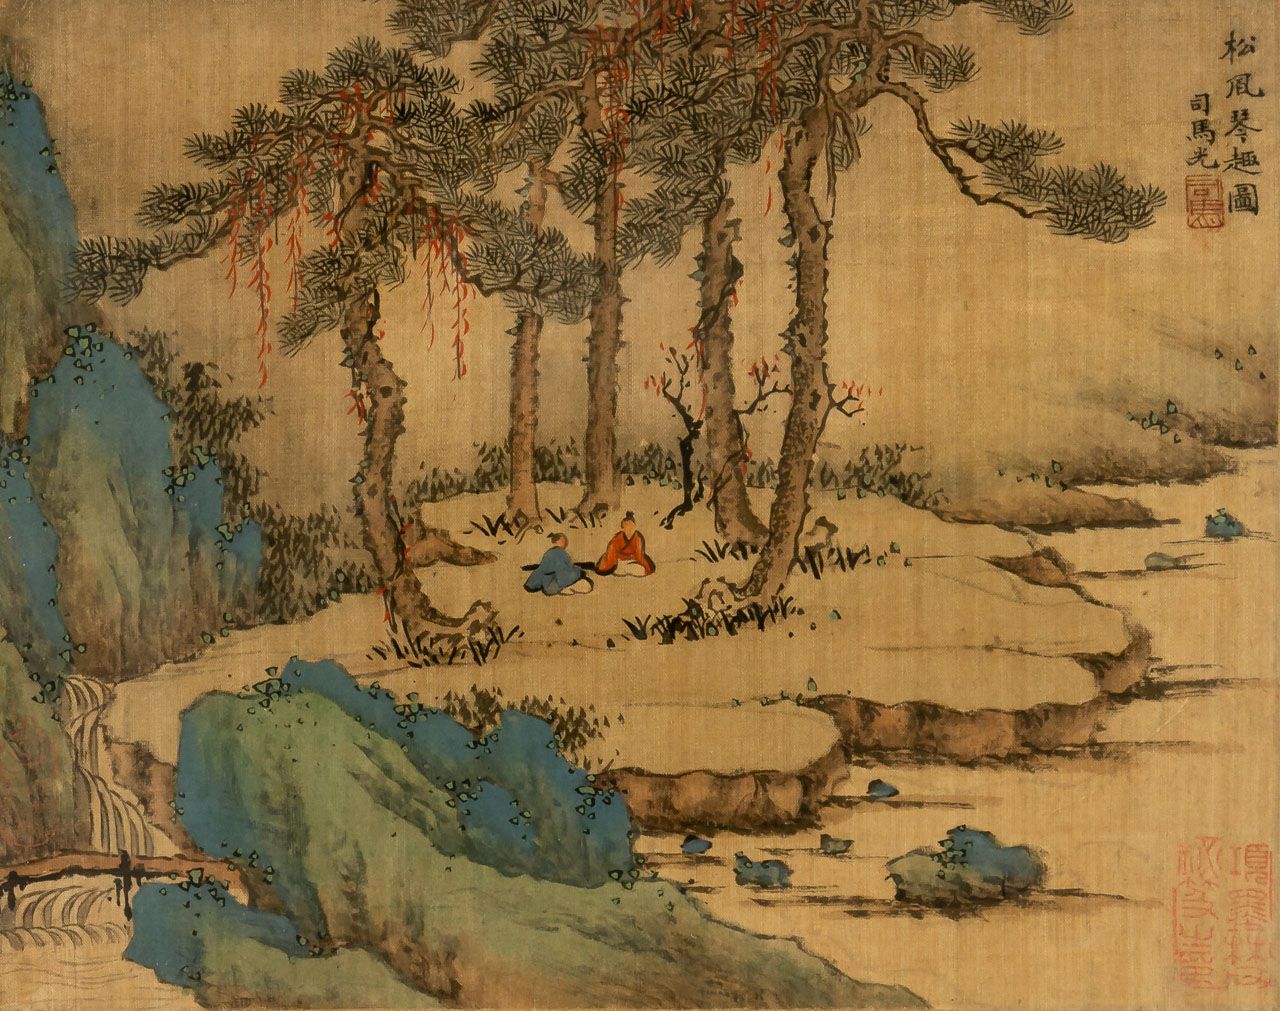 LANDSCHAFT Chine, peint sur soie, 19e s.

Taille de la lumière : 21 x 27 cm, cad&hellip;